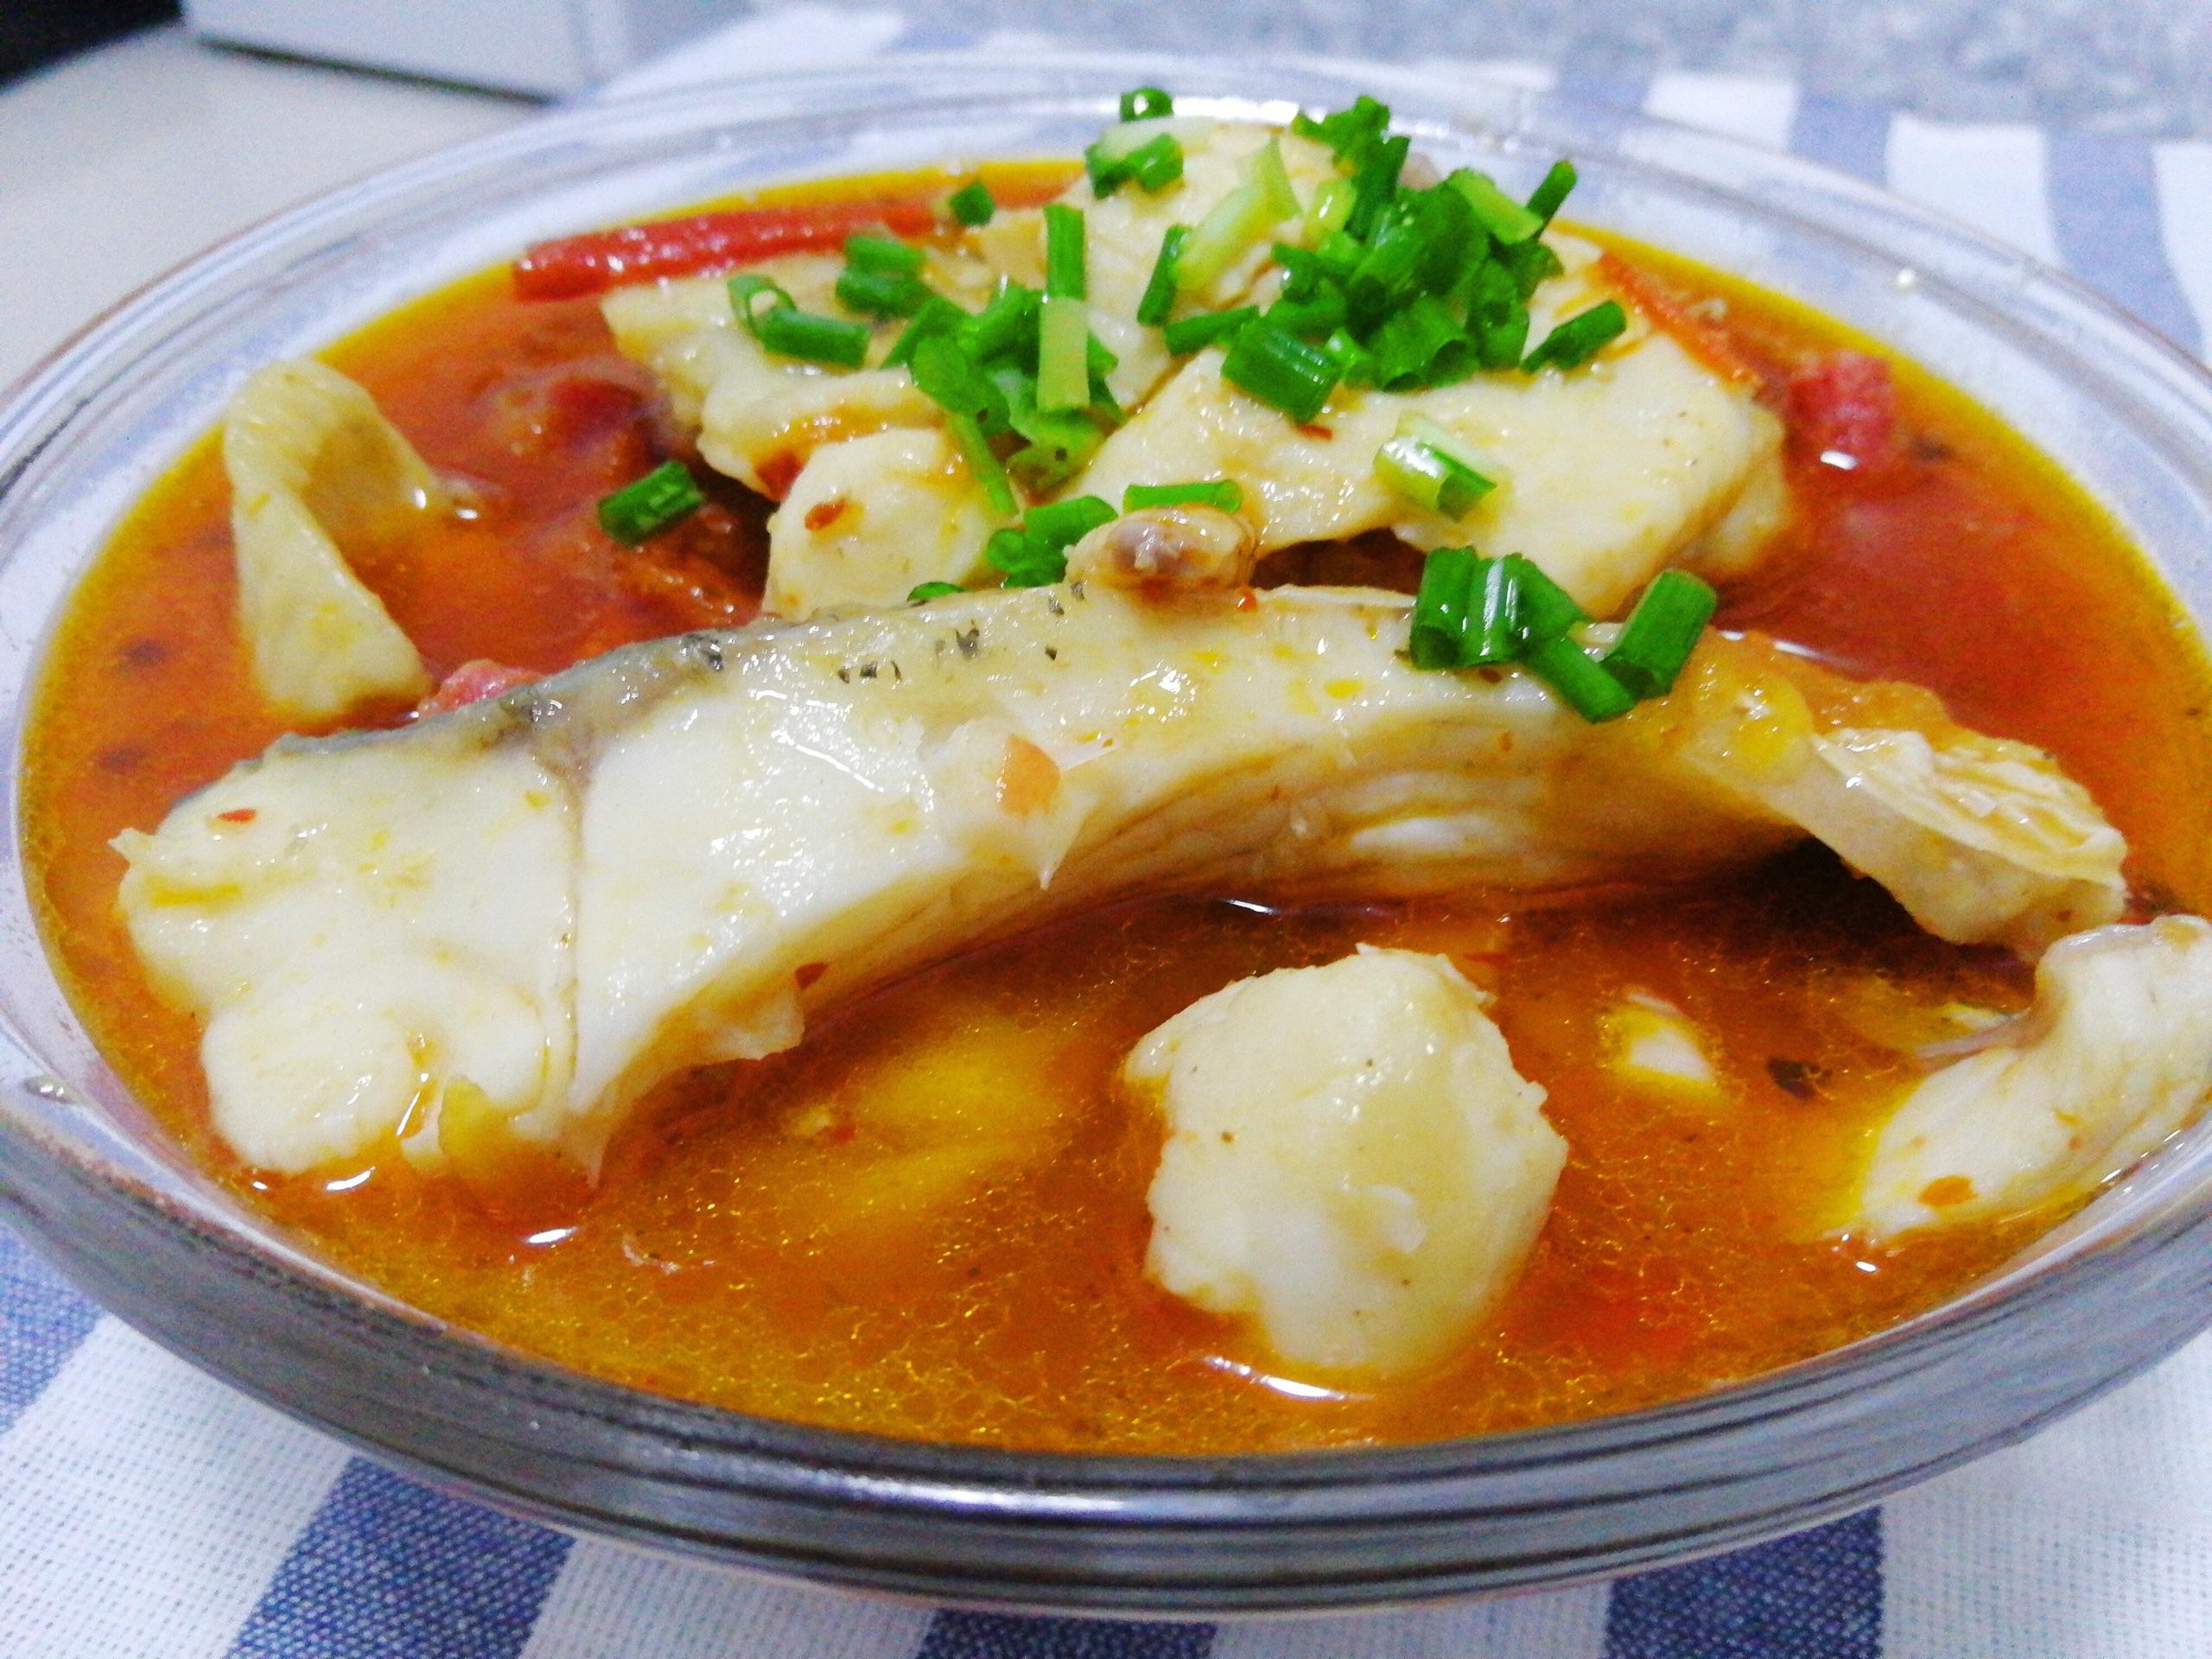 魚腸劍譜: 五柳枝算是台菜的創作料理了